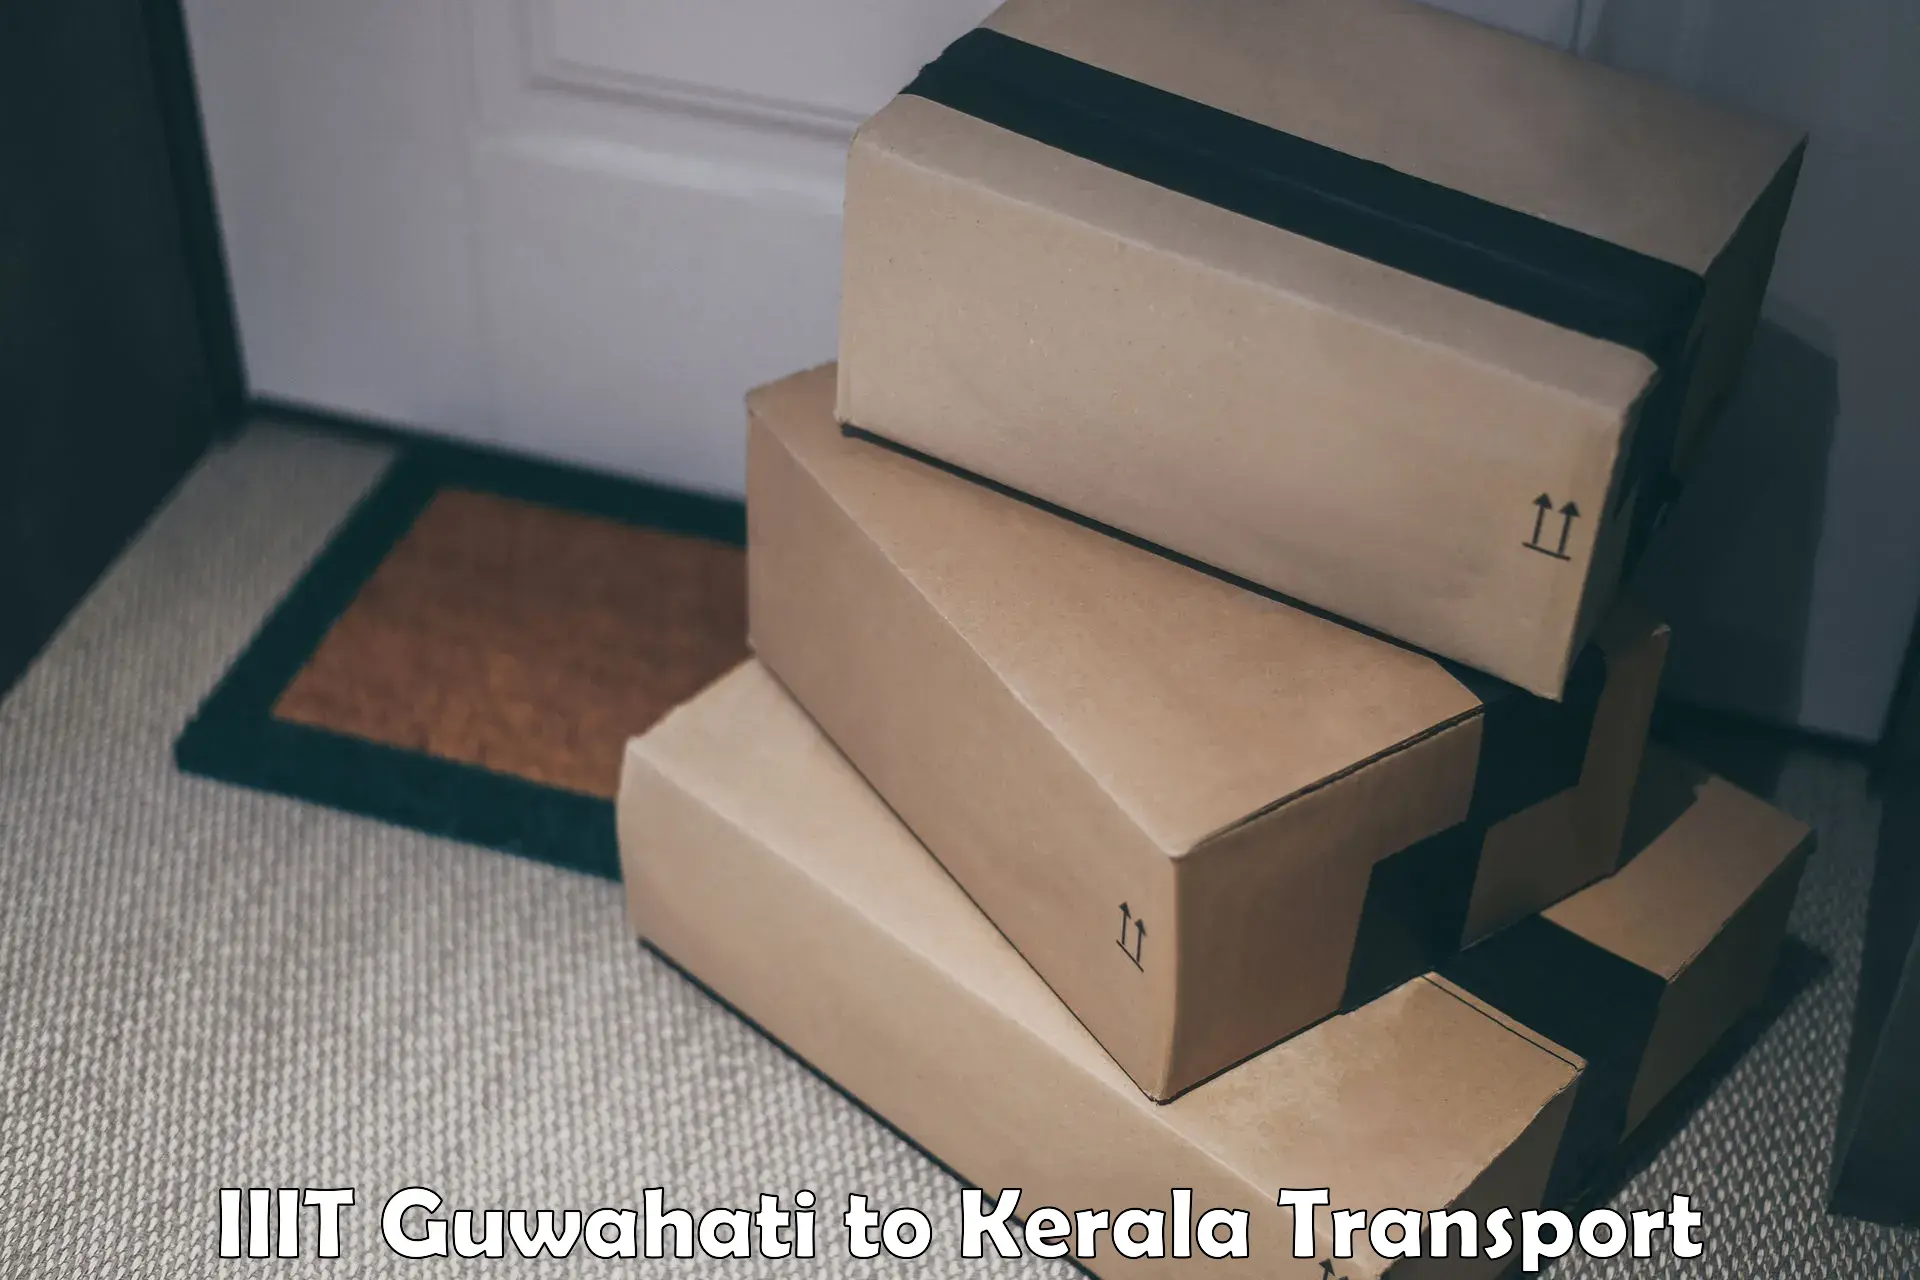 Parcel transport services IIIT Guwahati to Thrissur